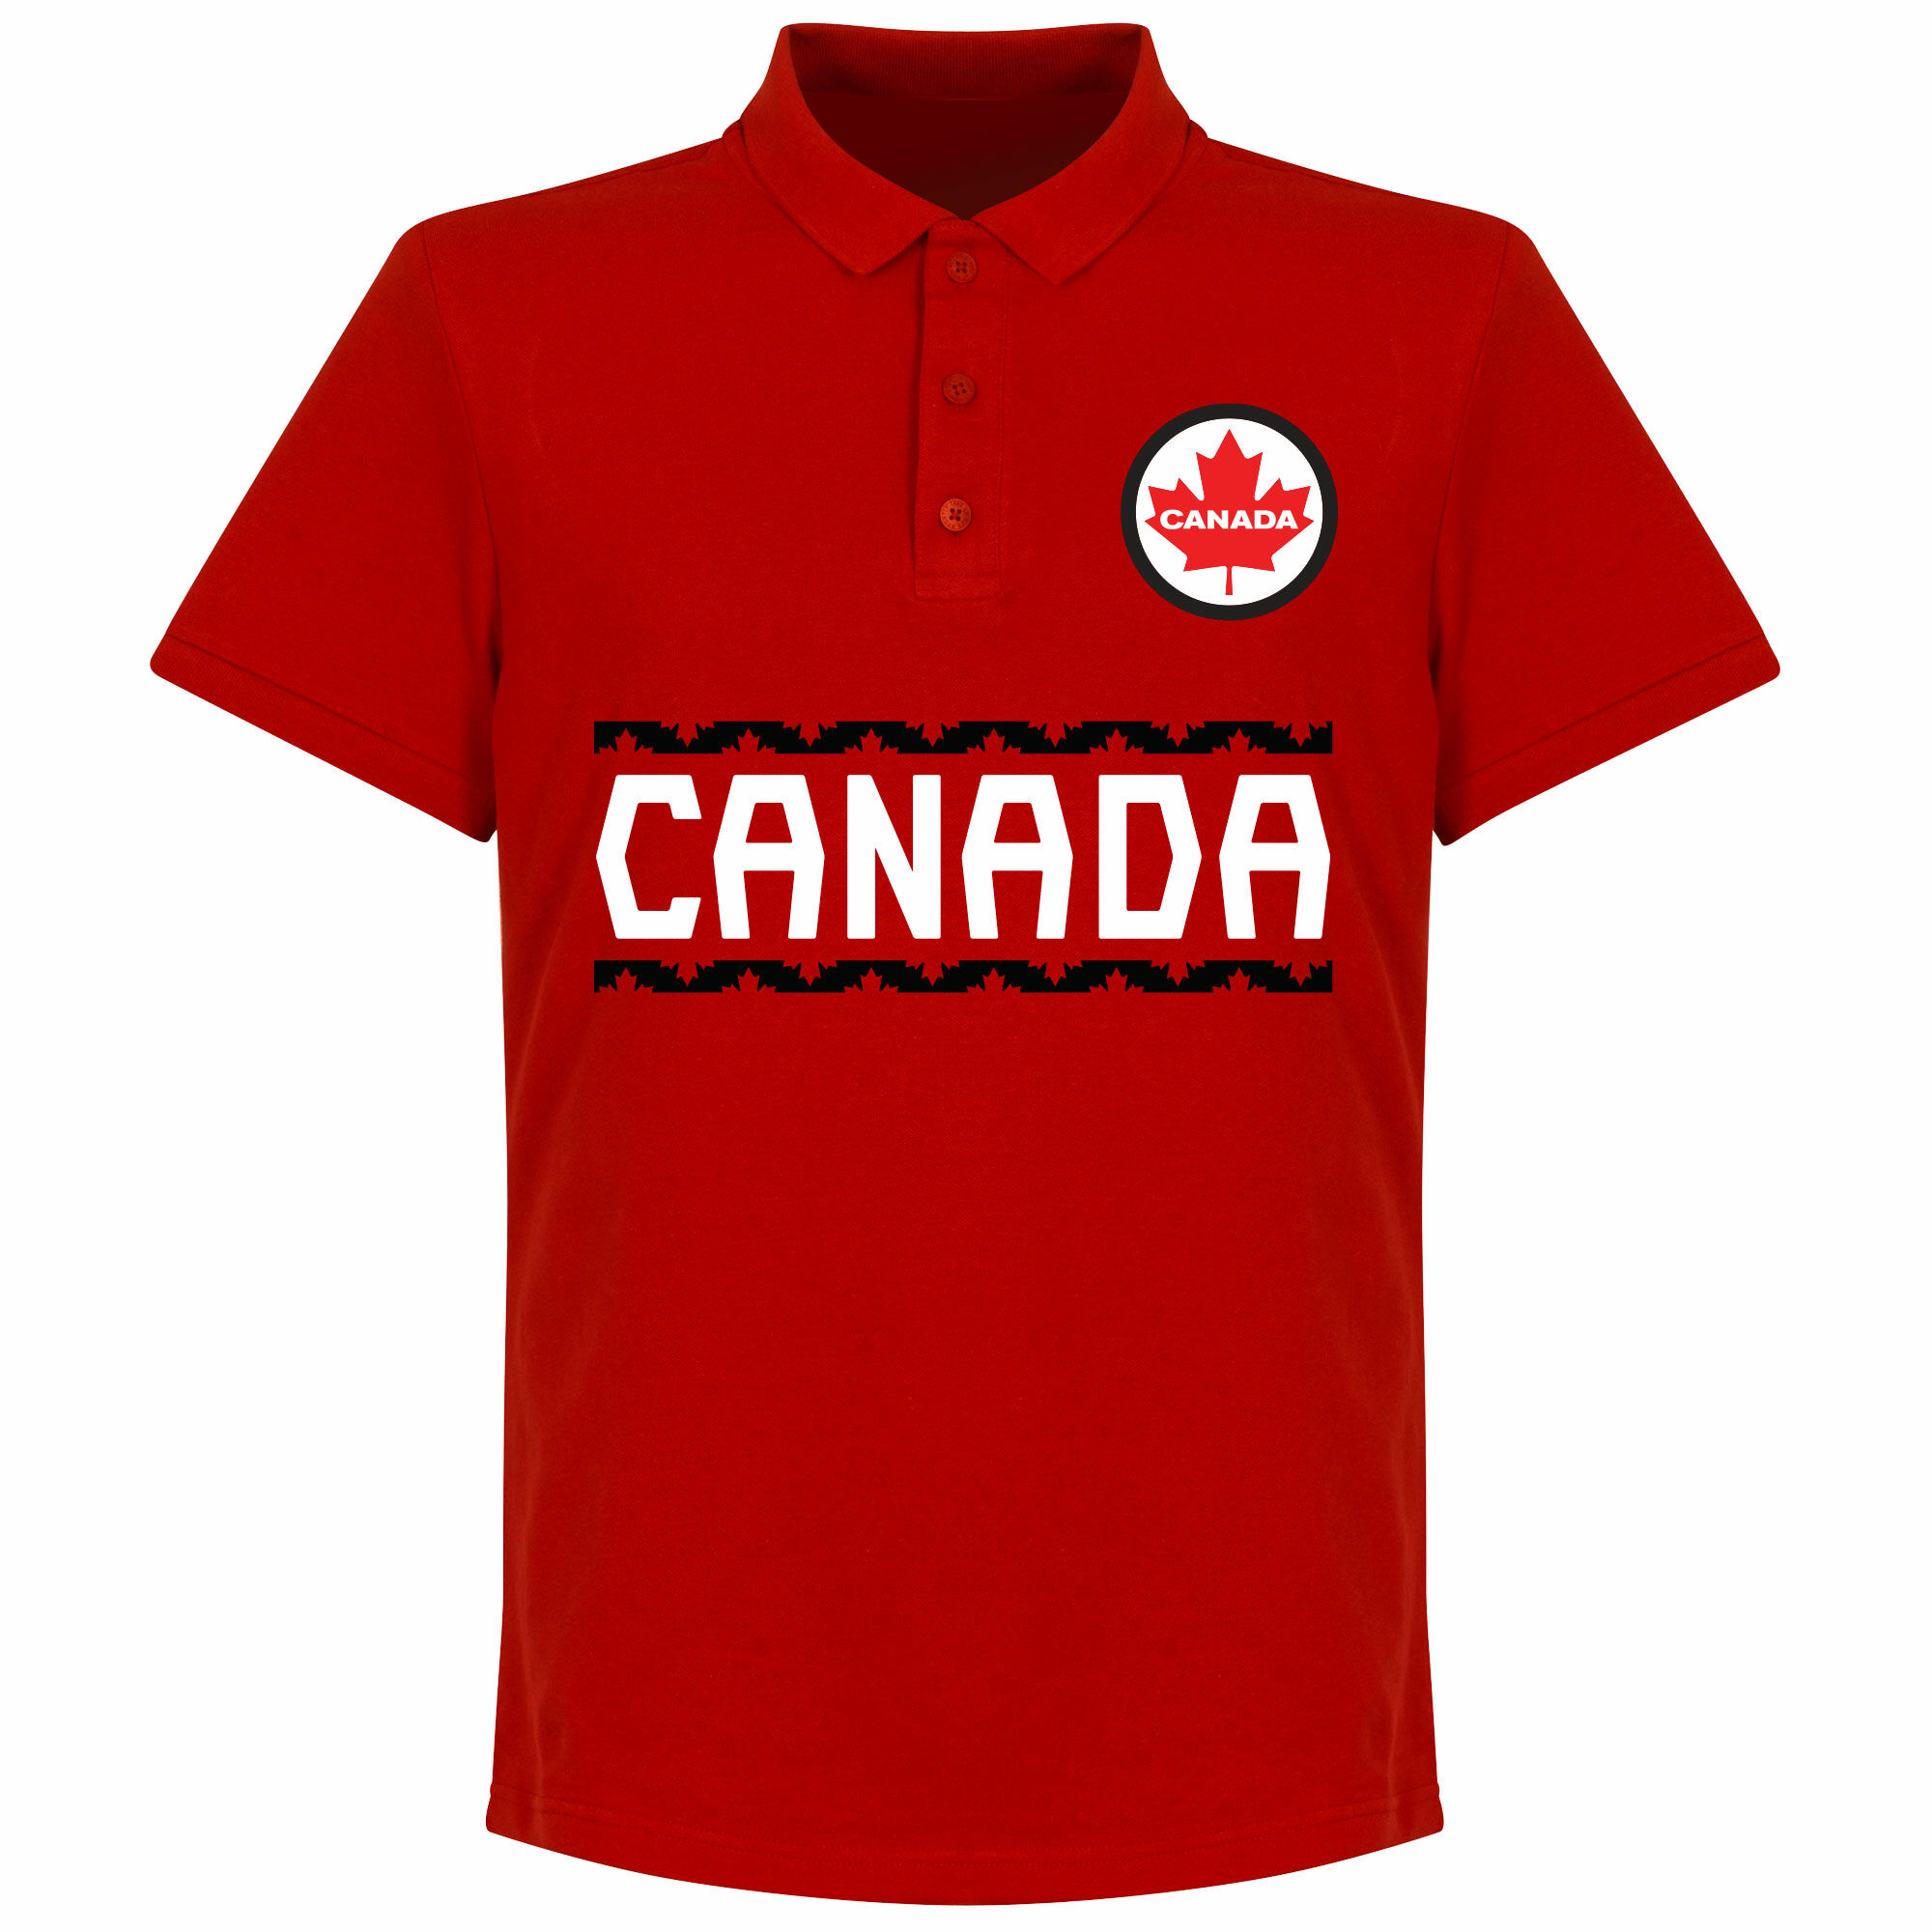 Kanada - Tričko s límečkem - červené